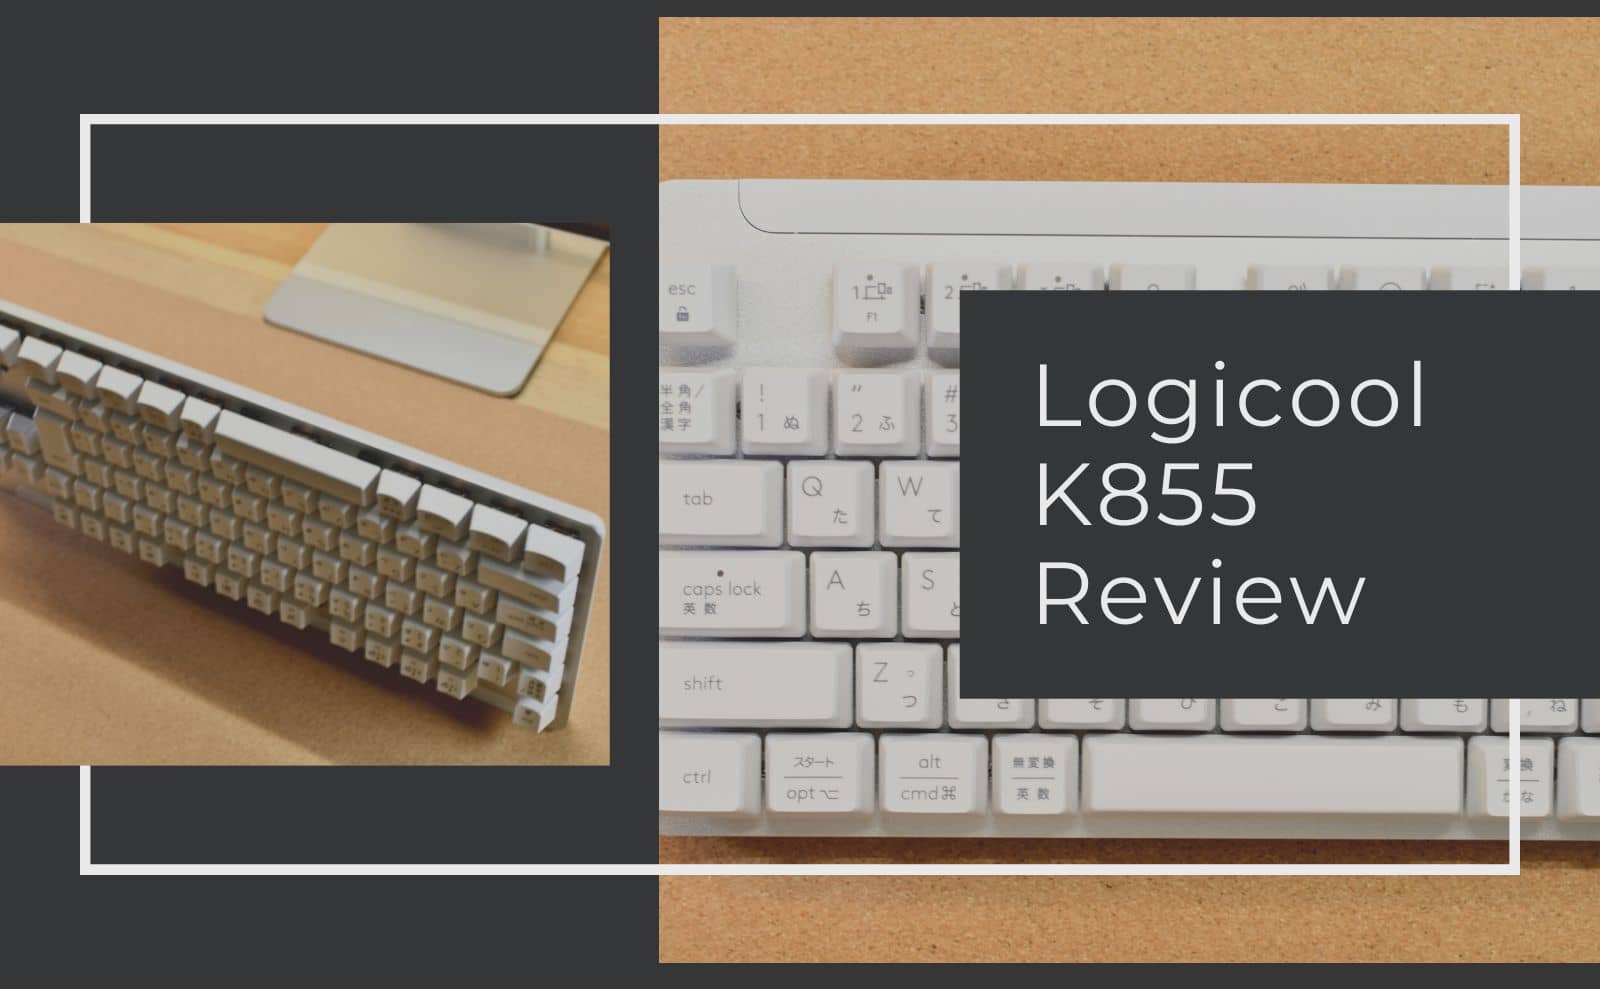 ロジクールSignature K855ワイヤレスキーボードレビュー！4色から